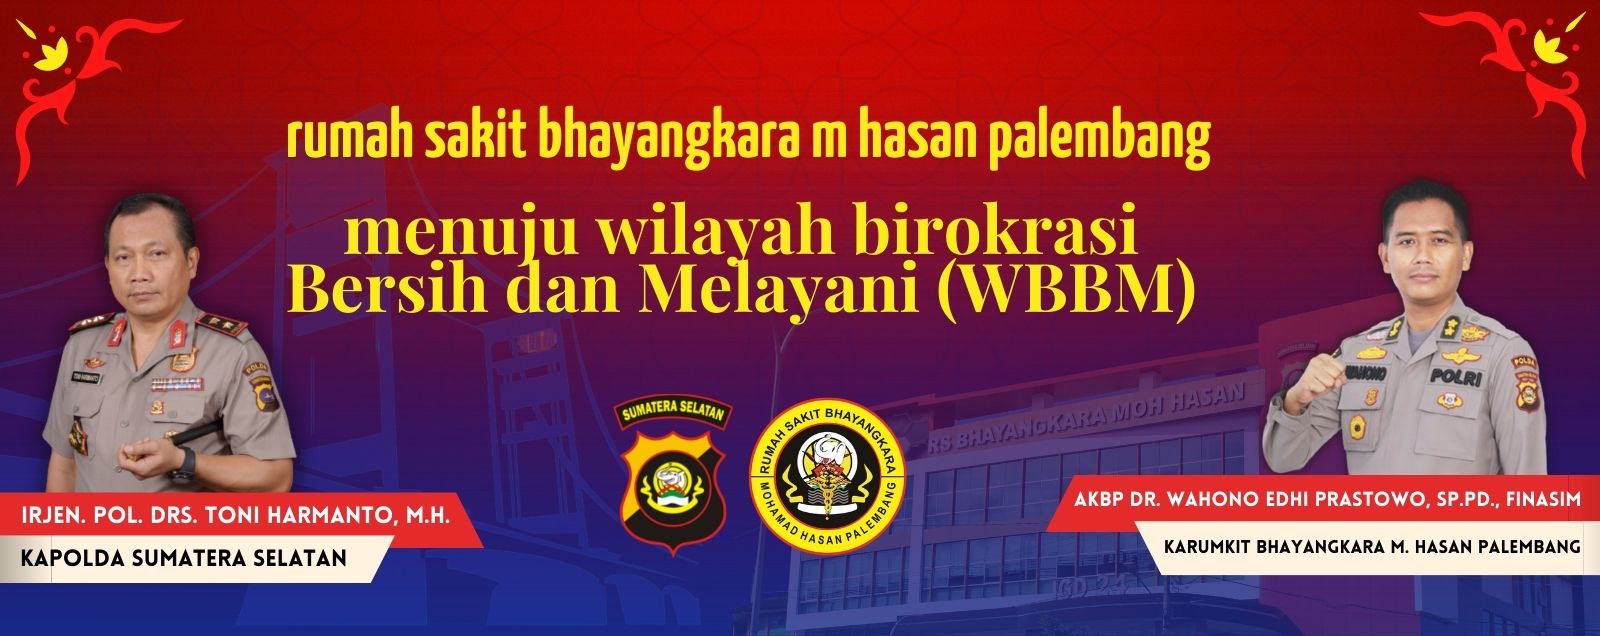 menuju wilayah birokrasi Bersih dan Melayani (WBBM)